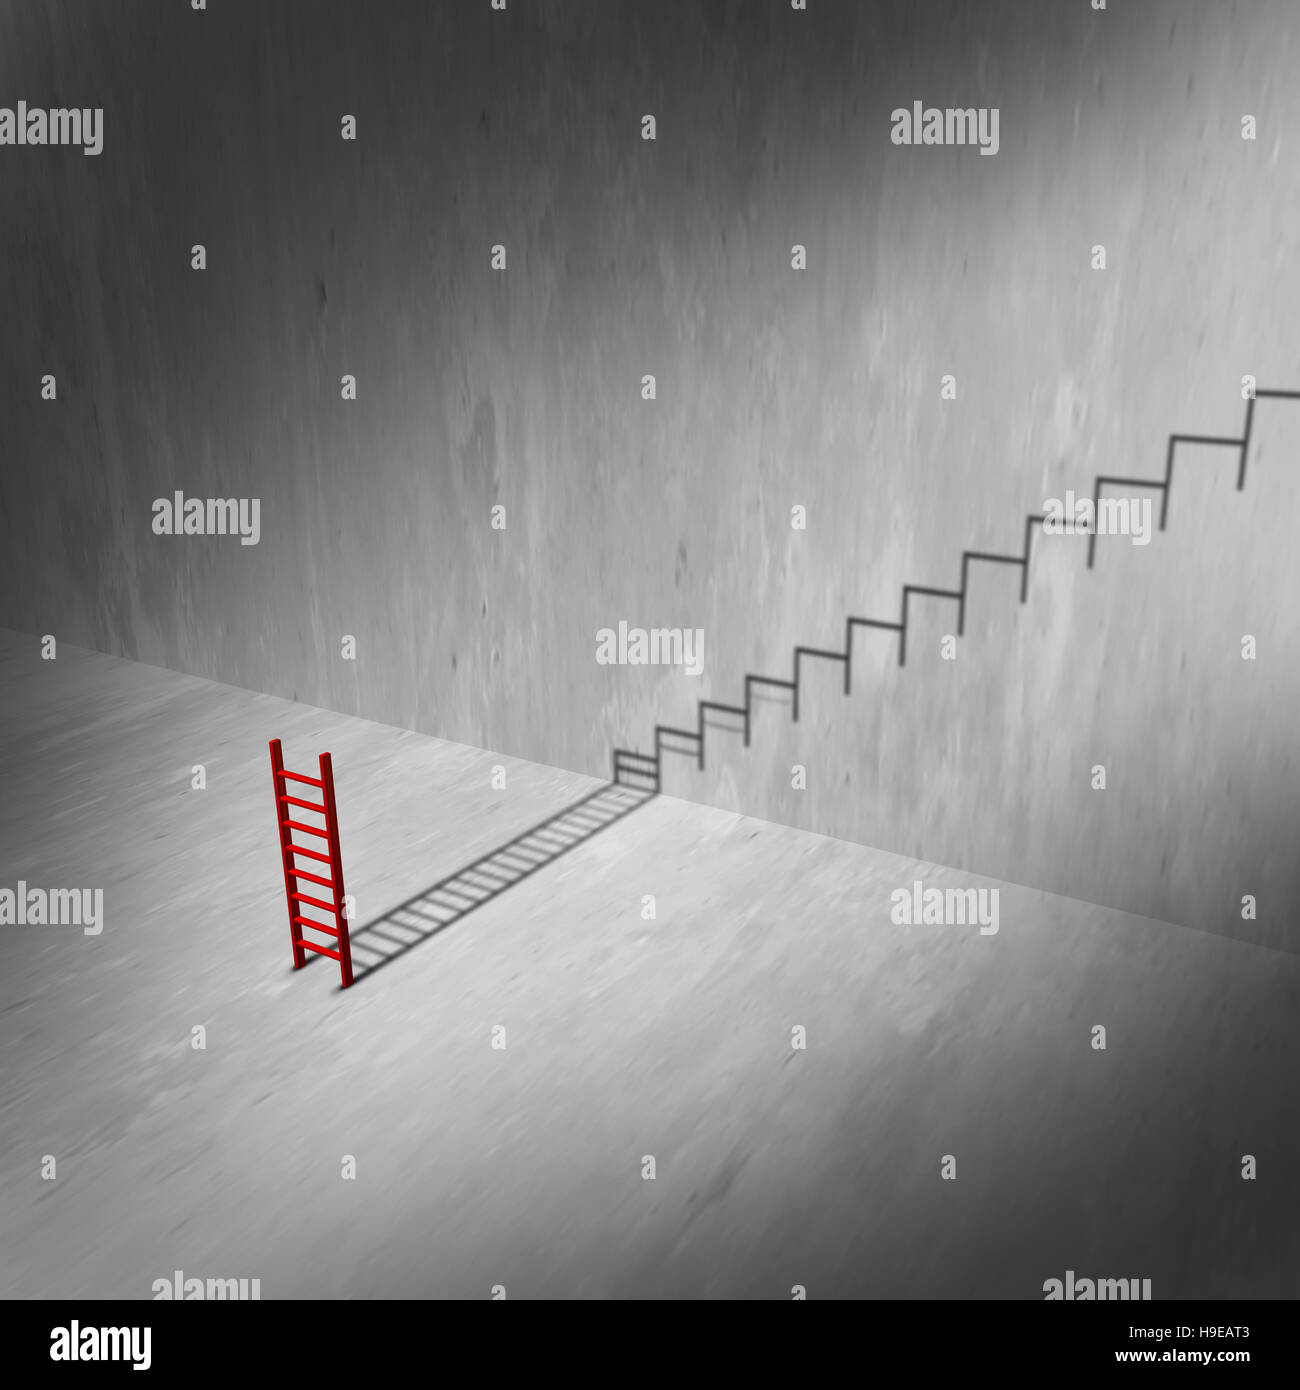 La scaletta di successo e scale concetto come strumento di arrampicata getta un' ombra di una scala o di scale come un infinito ascesa al successo metafora e ambizione sy Foto Stock